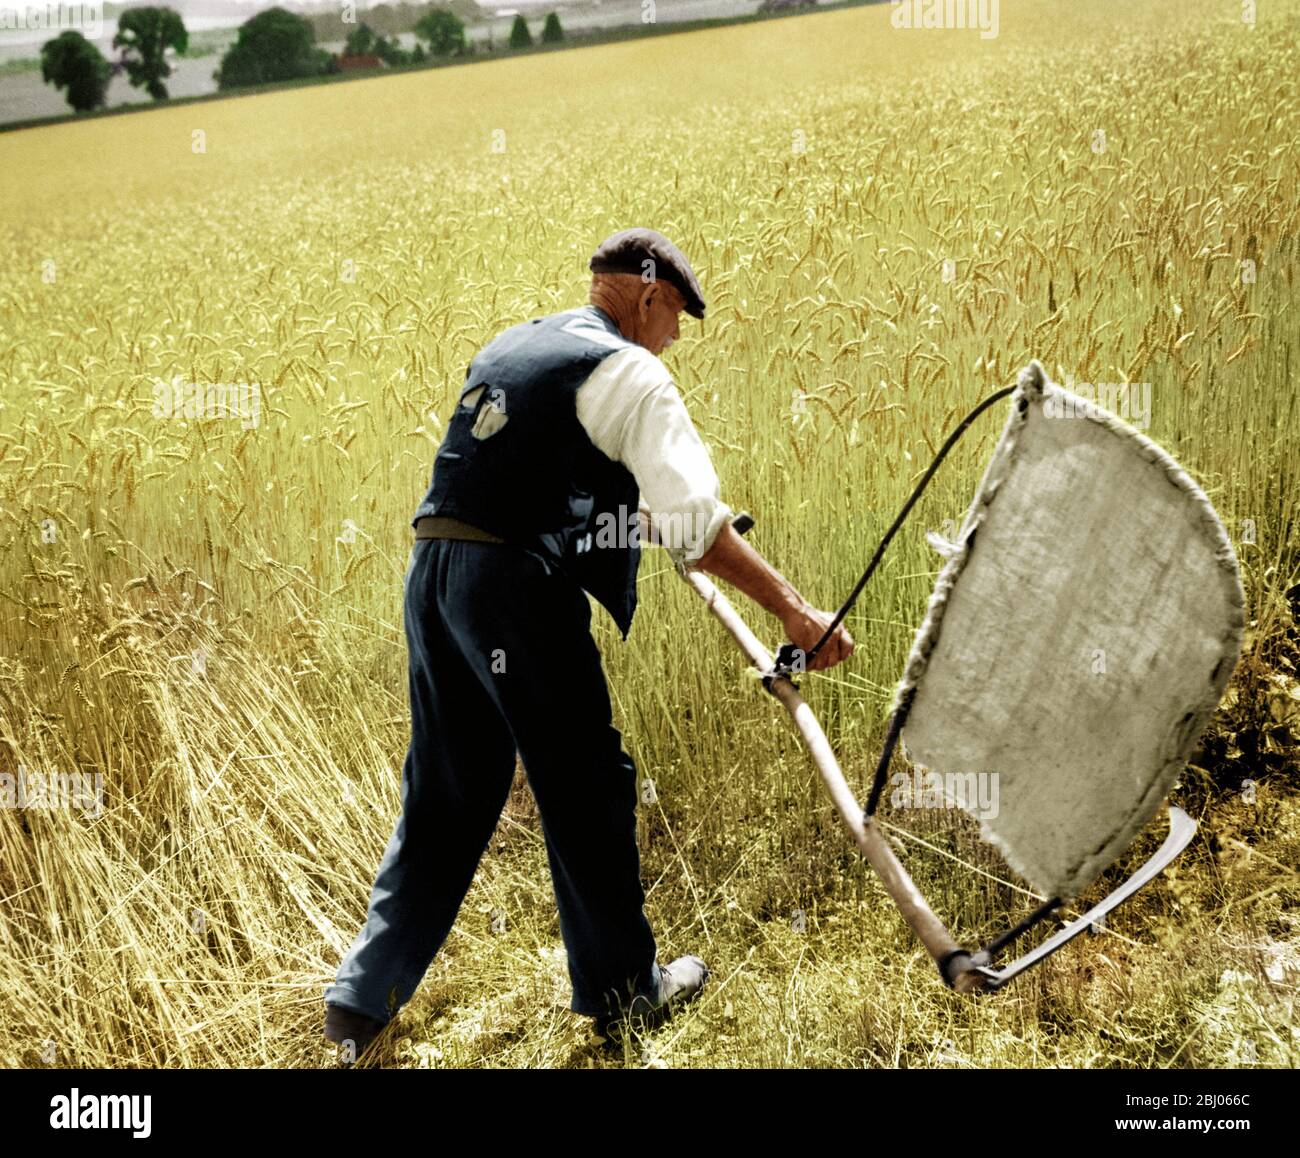 El hombre cortando maíz con una escotha - cosechando a mano. La imagen muestra a Fred Goldup, de 72 años, trabajando en una granja cerca de Shoreham, Kent, haciendo paso con su bender casero y el scythe para que el pañal haga un comienzo en este campo de trigo. - - 5 de agosto de 1947 Foto de stock